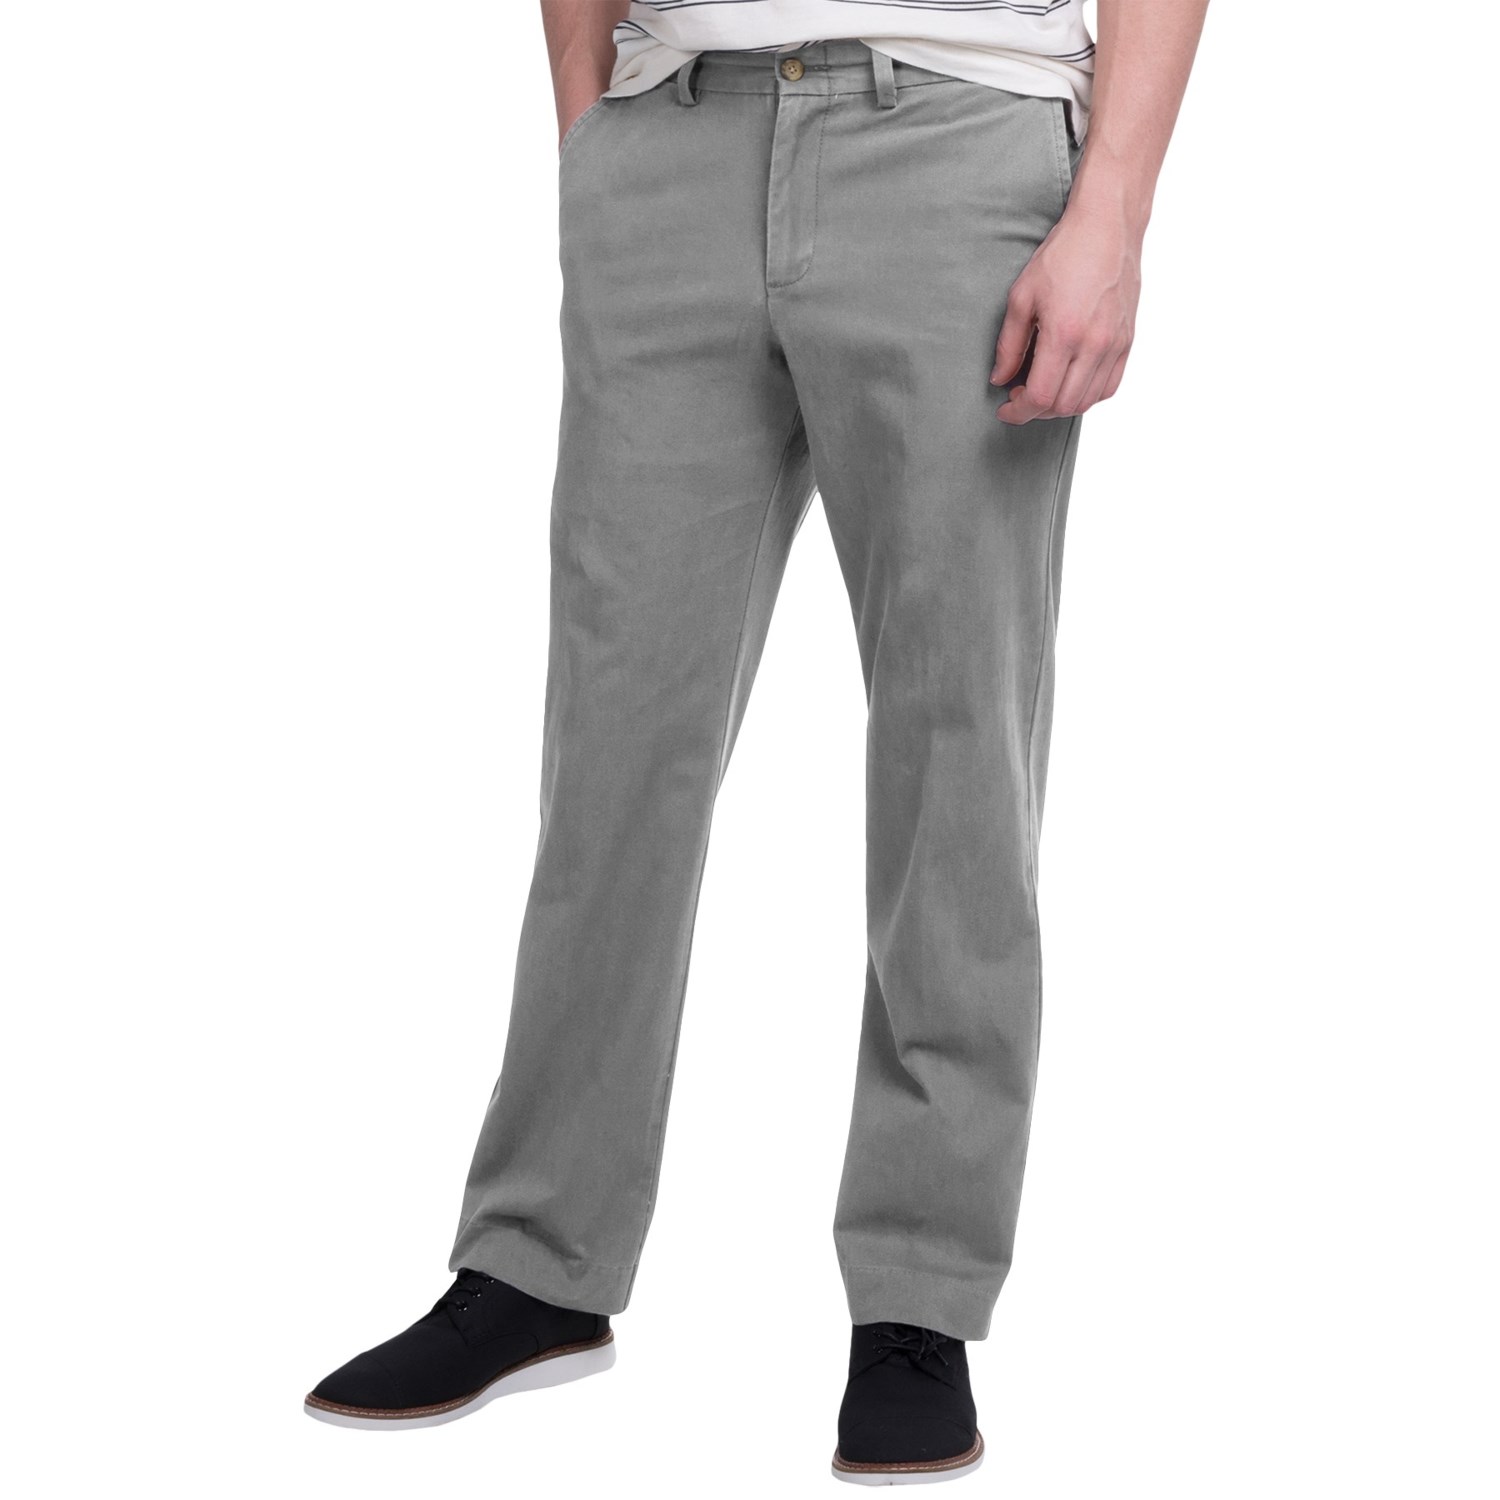 Bills Khakis Standard Issue M3 Trim Fit Twill Pants (For Men)